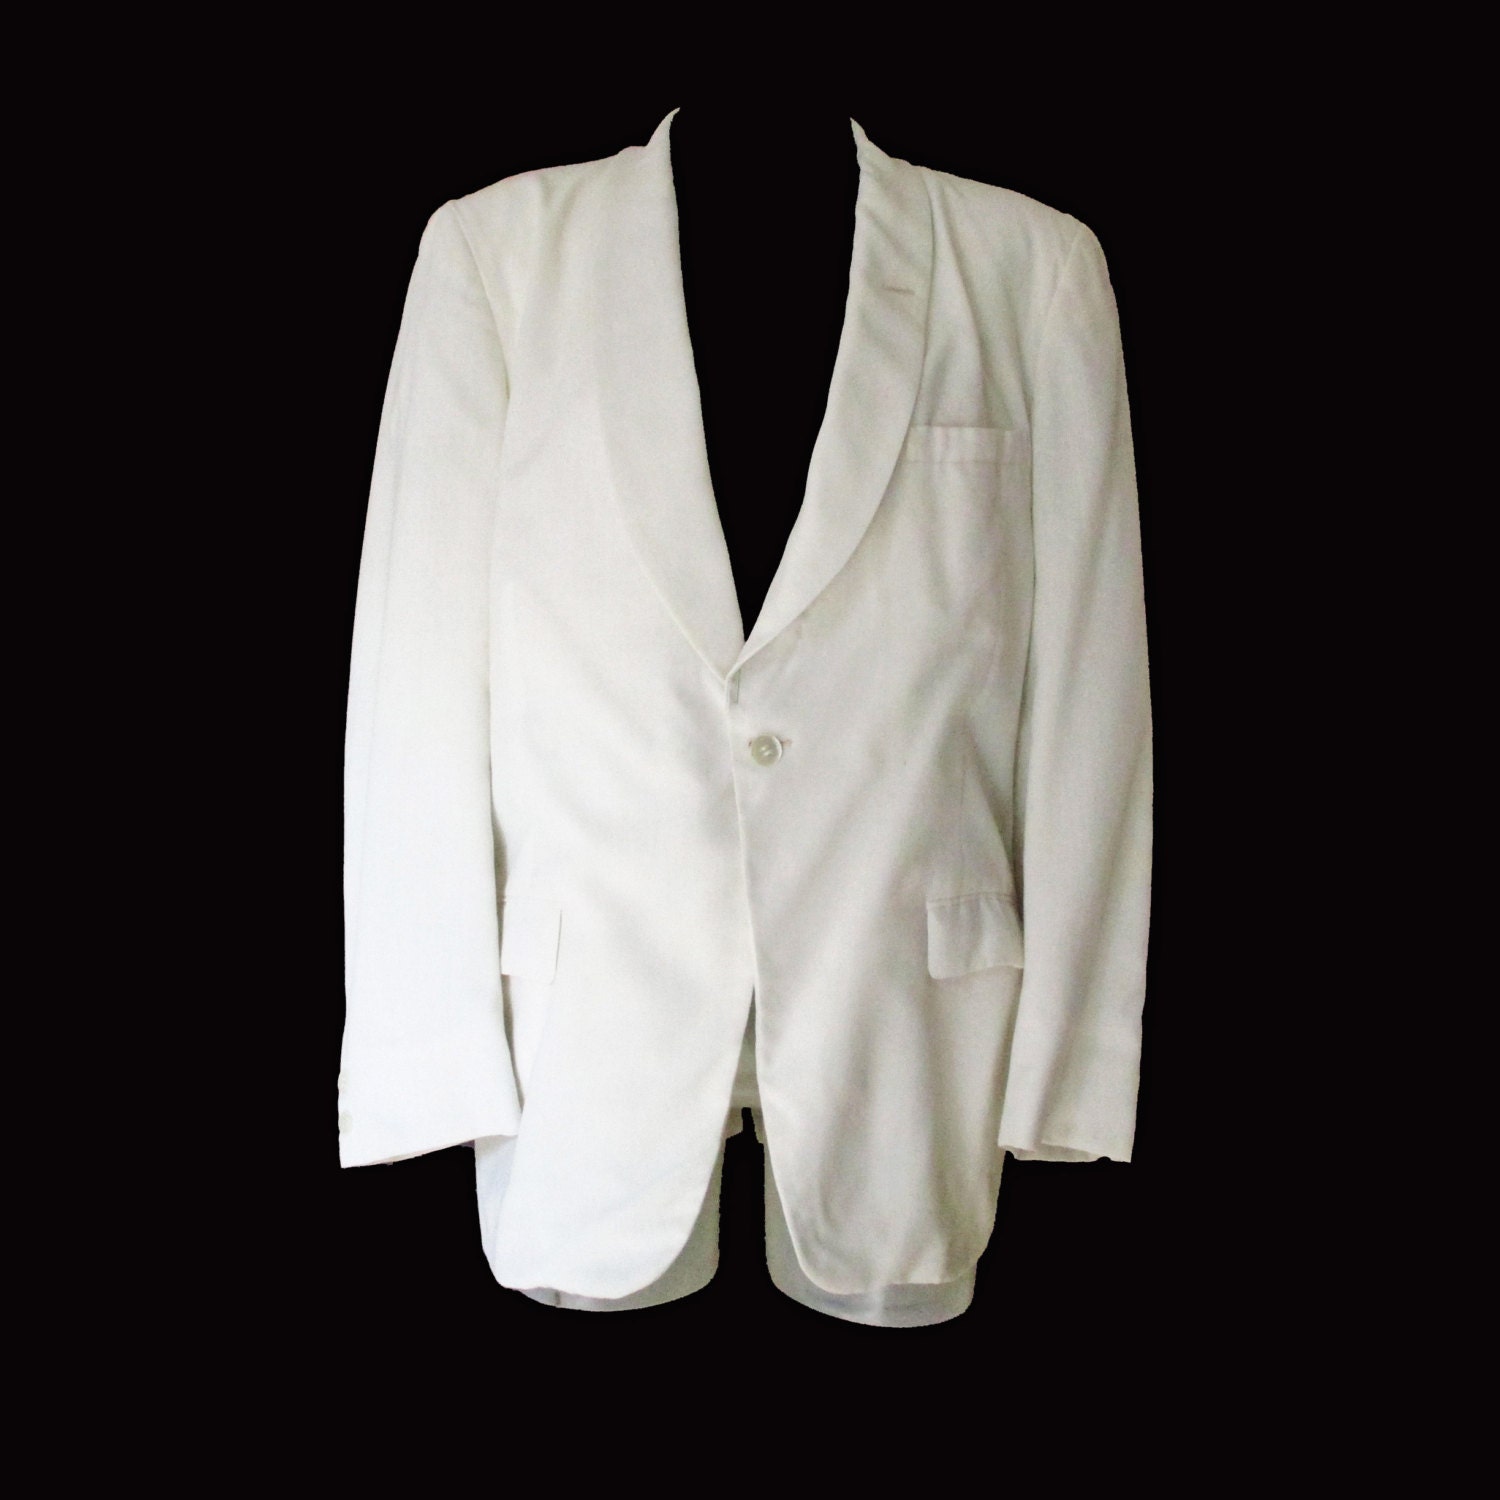 Men's Vintage White 1960s Dinner Jacket by LunaJunctionVintage